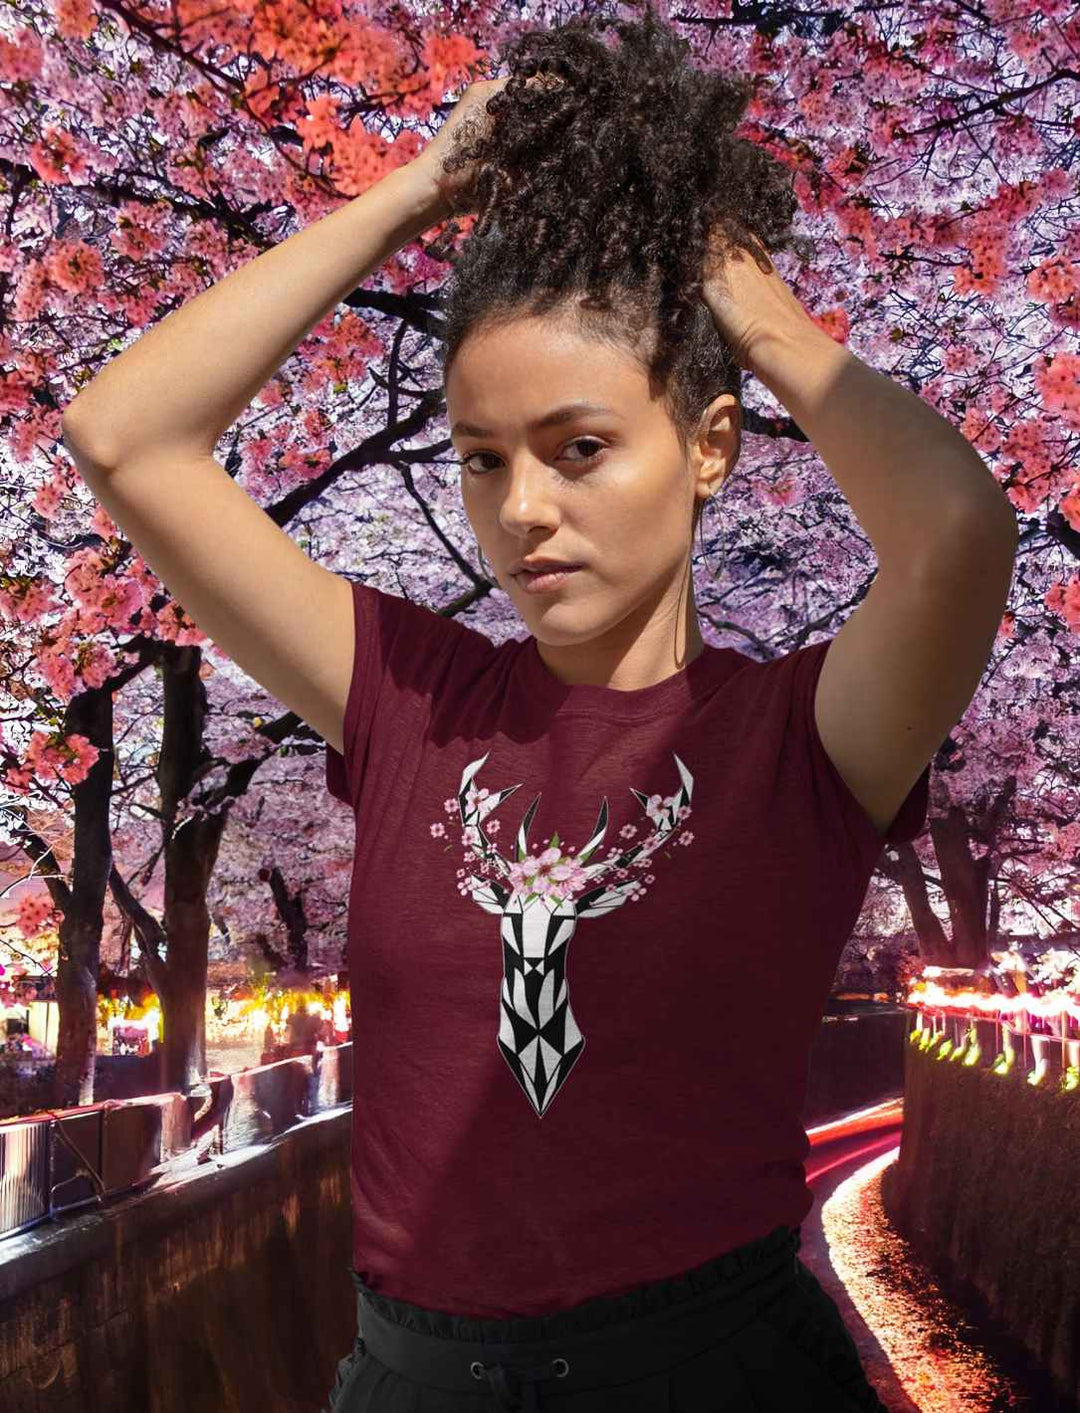 Eine junge Frau in einem burgunderfarbenen "Sakura Deer" T-Shirt, die das künstlerische Hirschmotiv umgeben von Kirschblüten zeigt, inspiriert von japanischen Frühlingslandschaften.